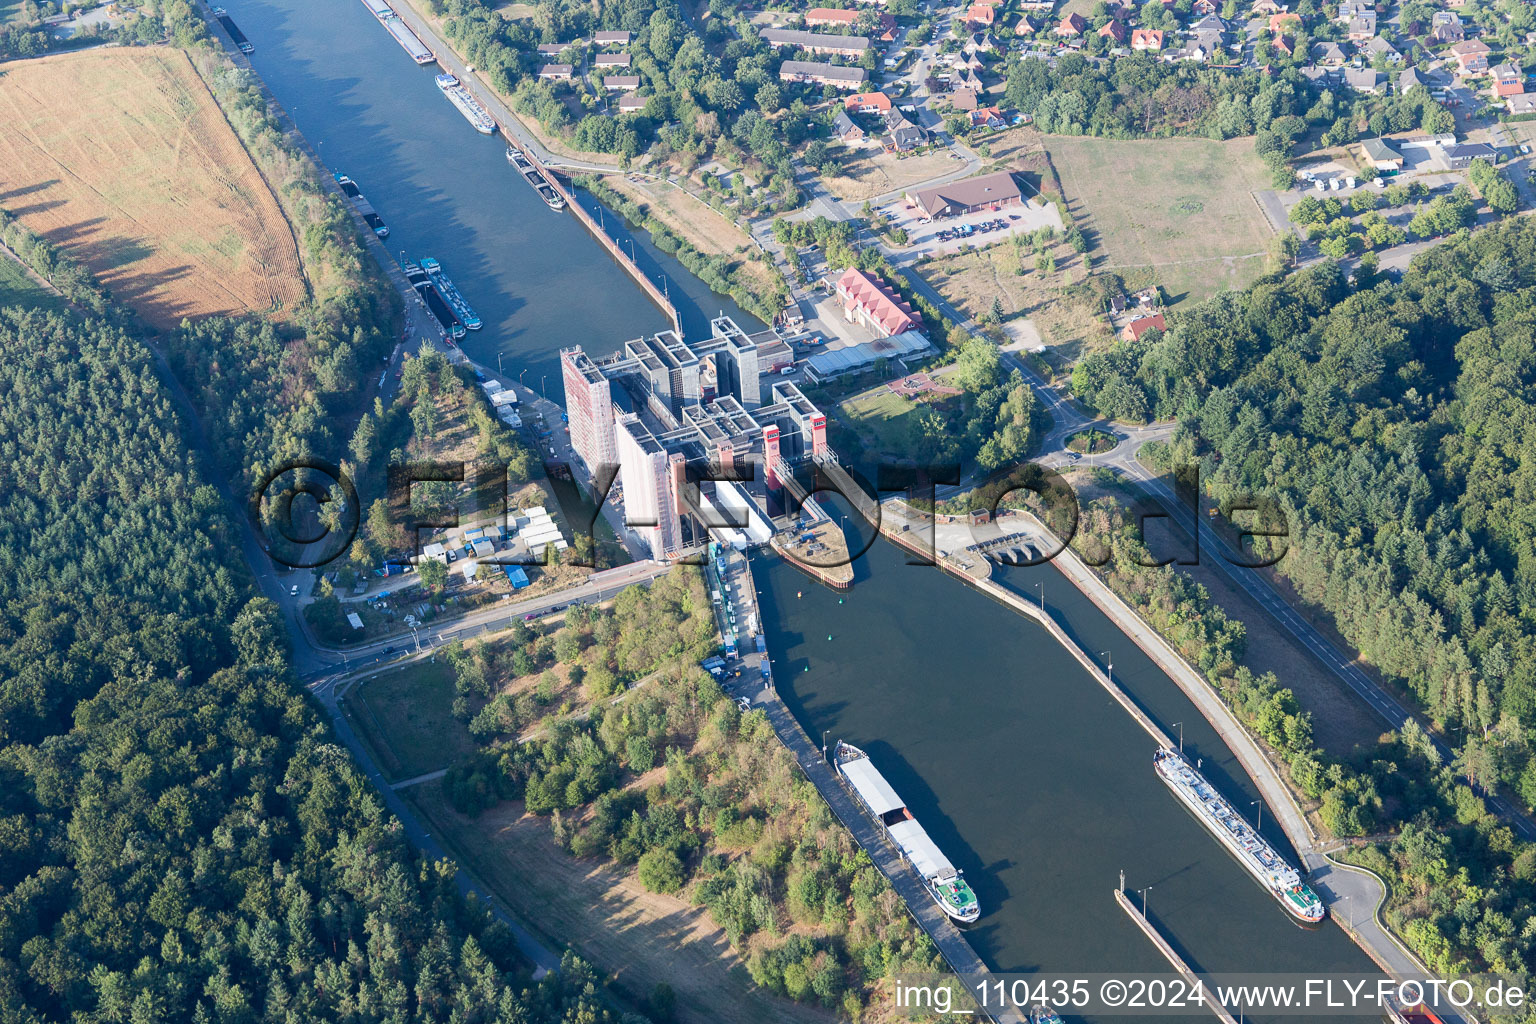 Systèmes d'ascenseurs à bateaux et d'écluses sur les rives du canal latéral à l'Elbe à Scharnebeck dans le département Basse-Saxe, Allemagne hors des airs